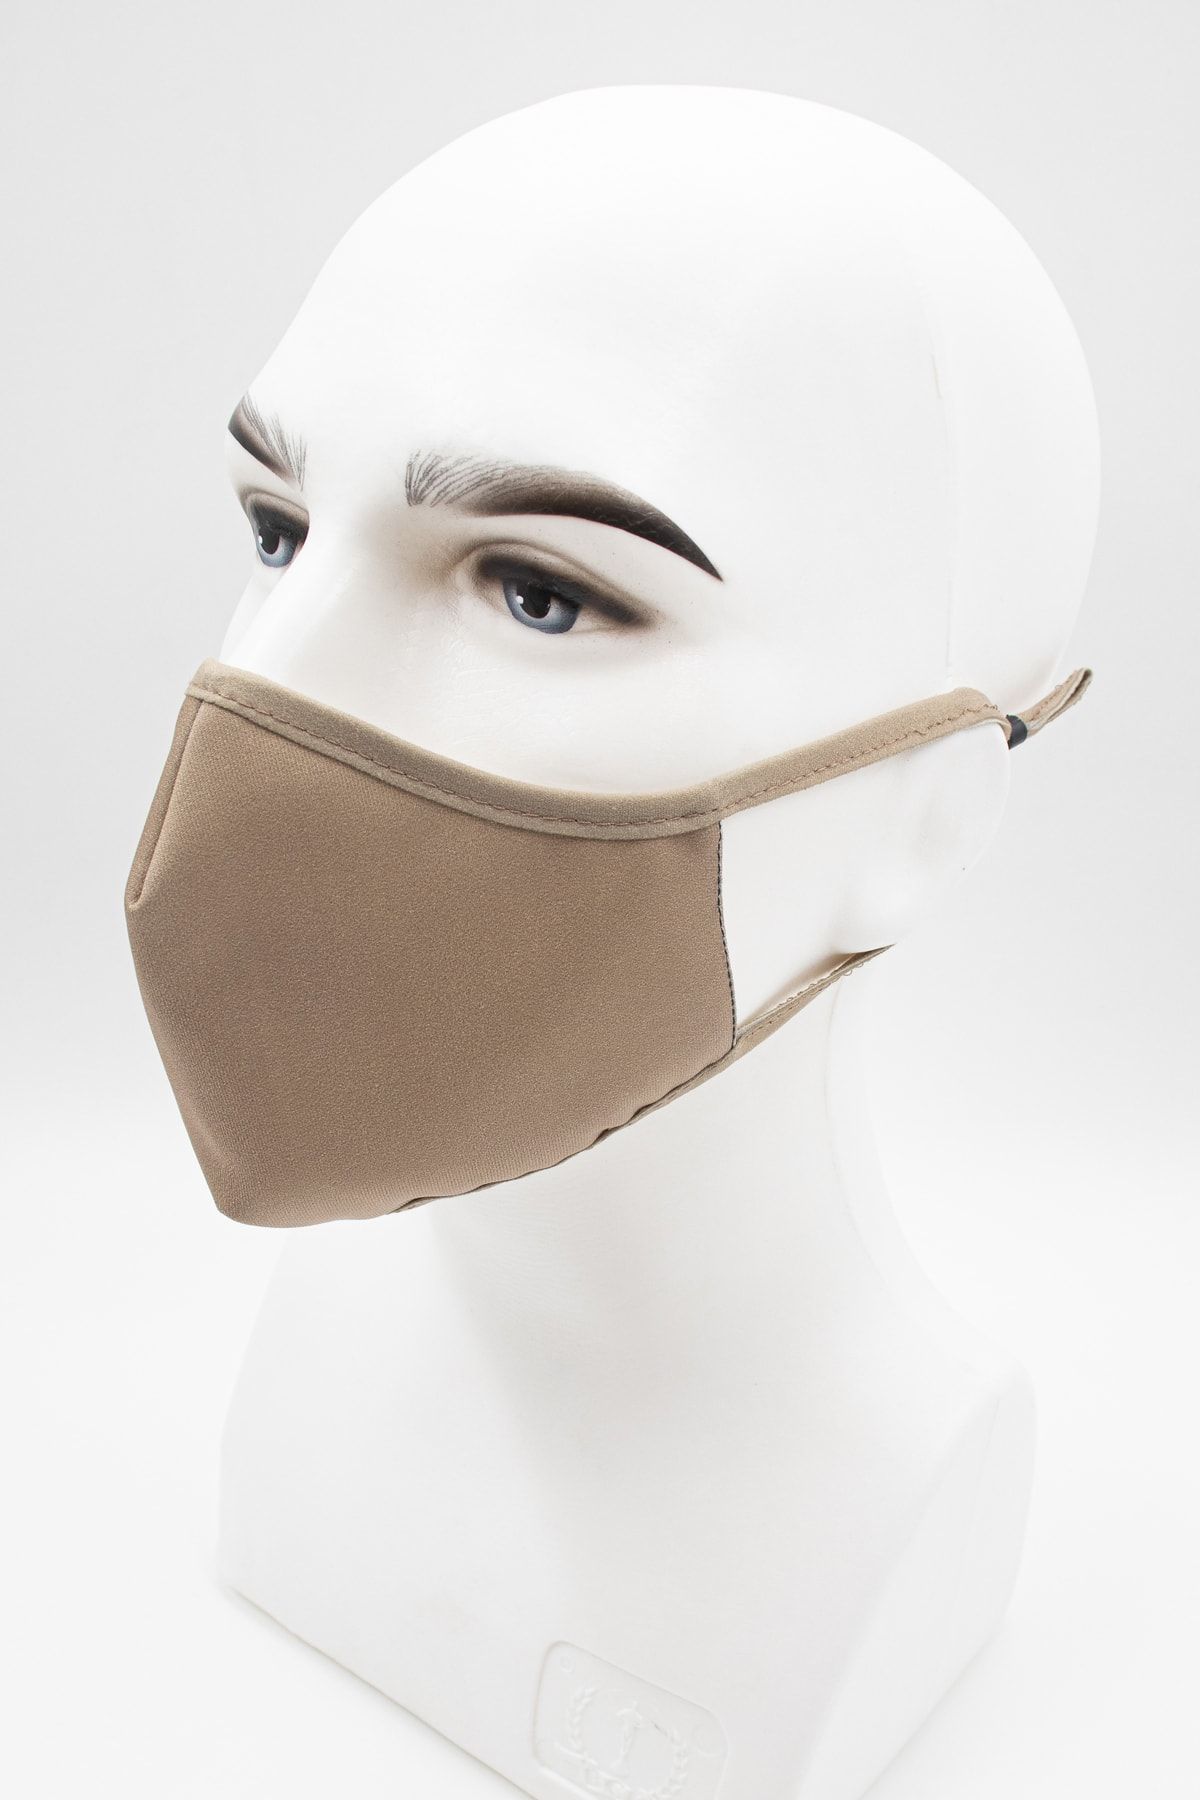 Daima Sağlık Tek Renkli Kulak Boyu Ayarlanabilir Mikro Kumaş Yıkanabilir Maske